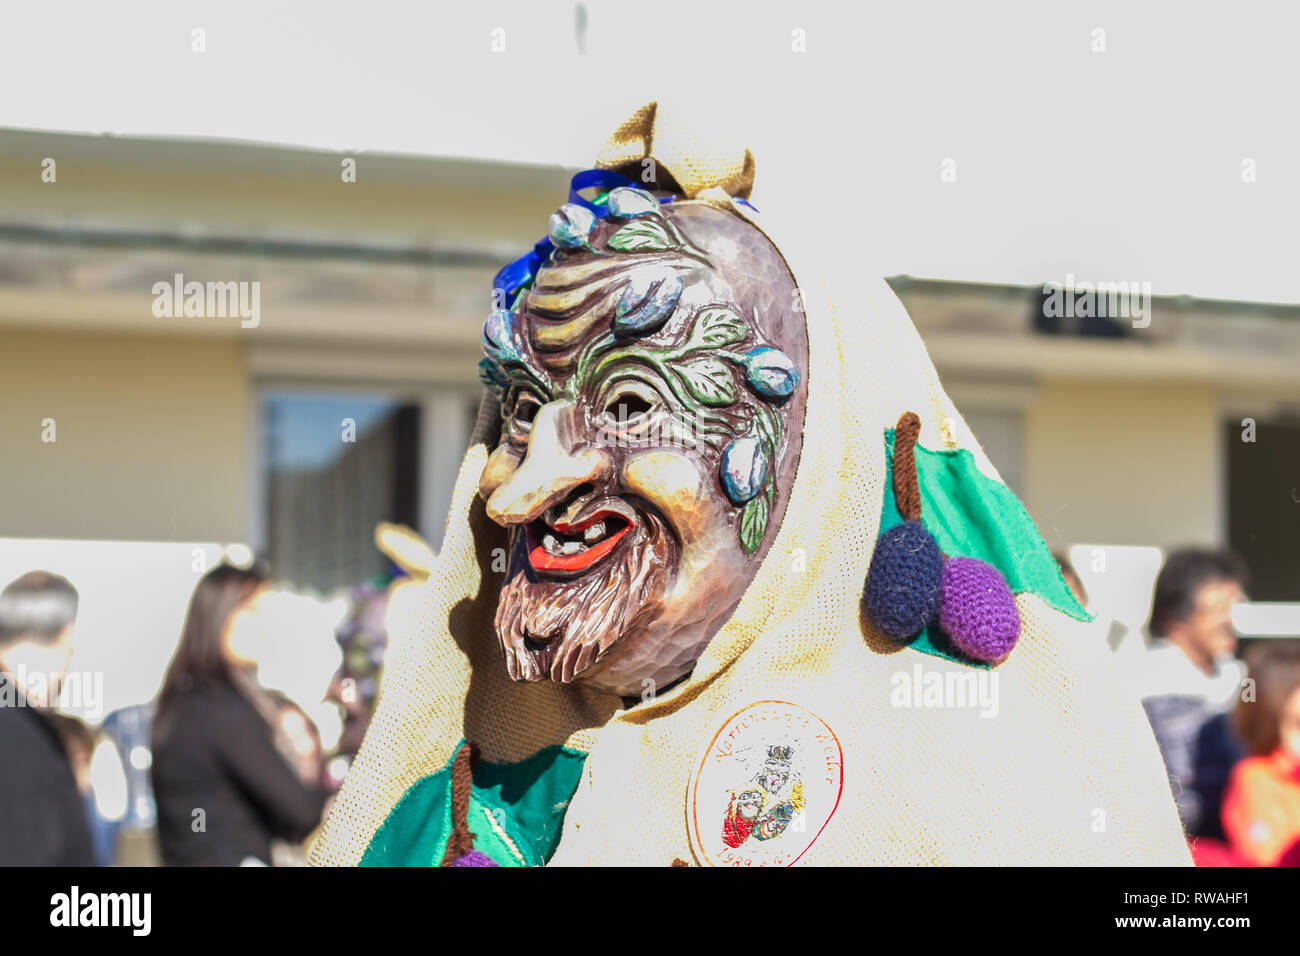 Bunter Festumzug zur schwäbisch-alemannischen Fasnet in Schwaben mit traditionellen Kostümen und Holzmasken Stock Photo